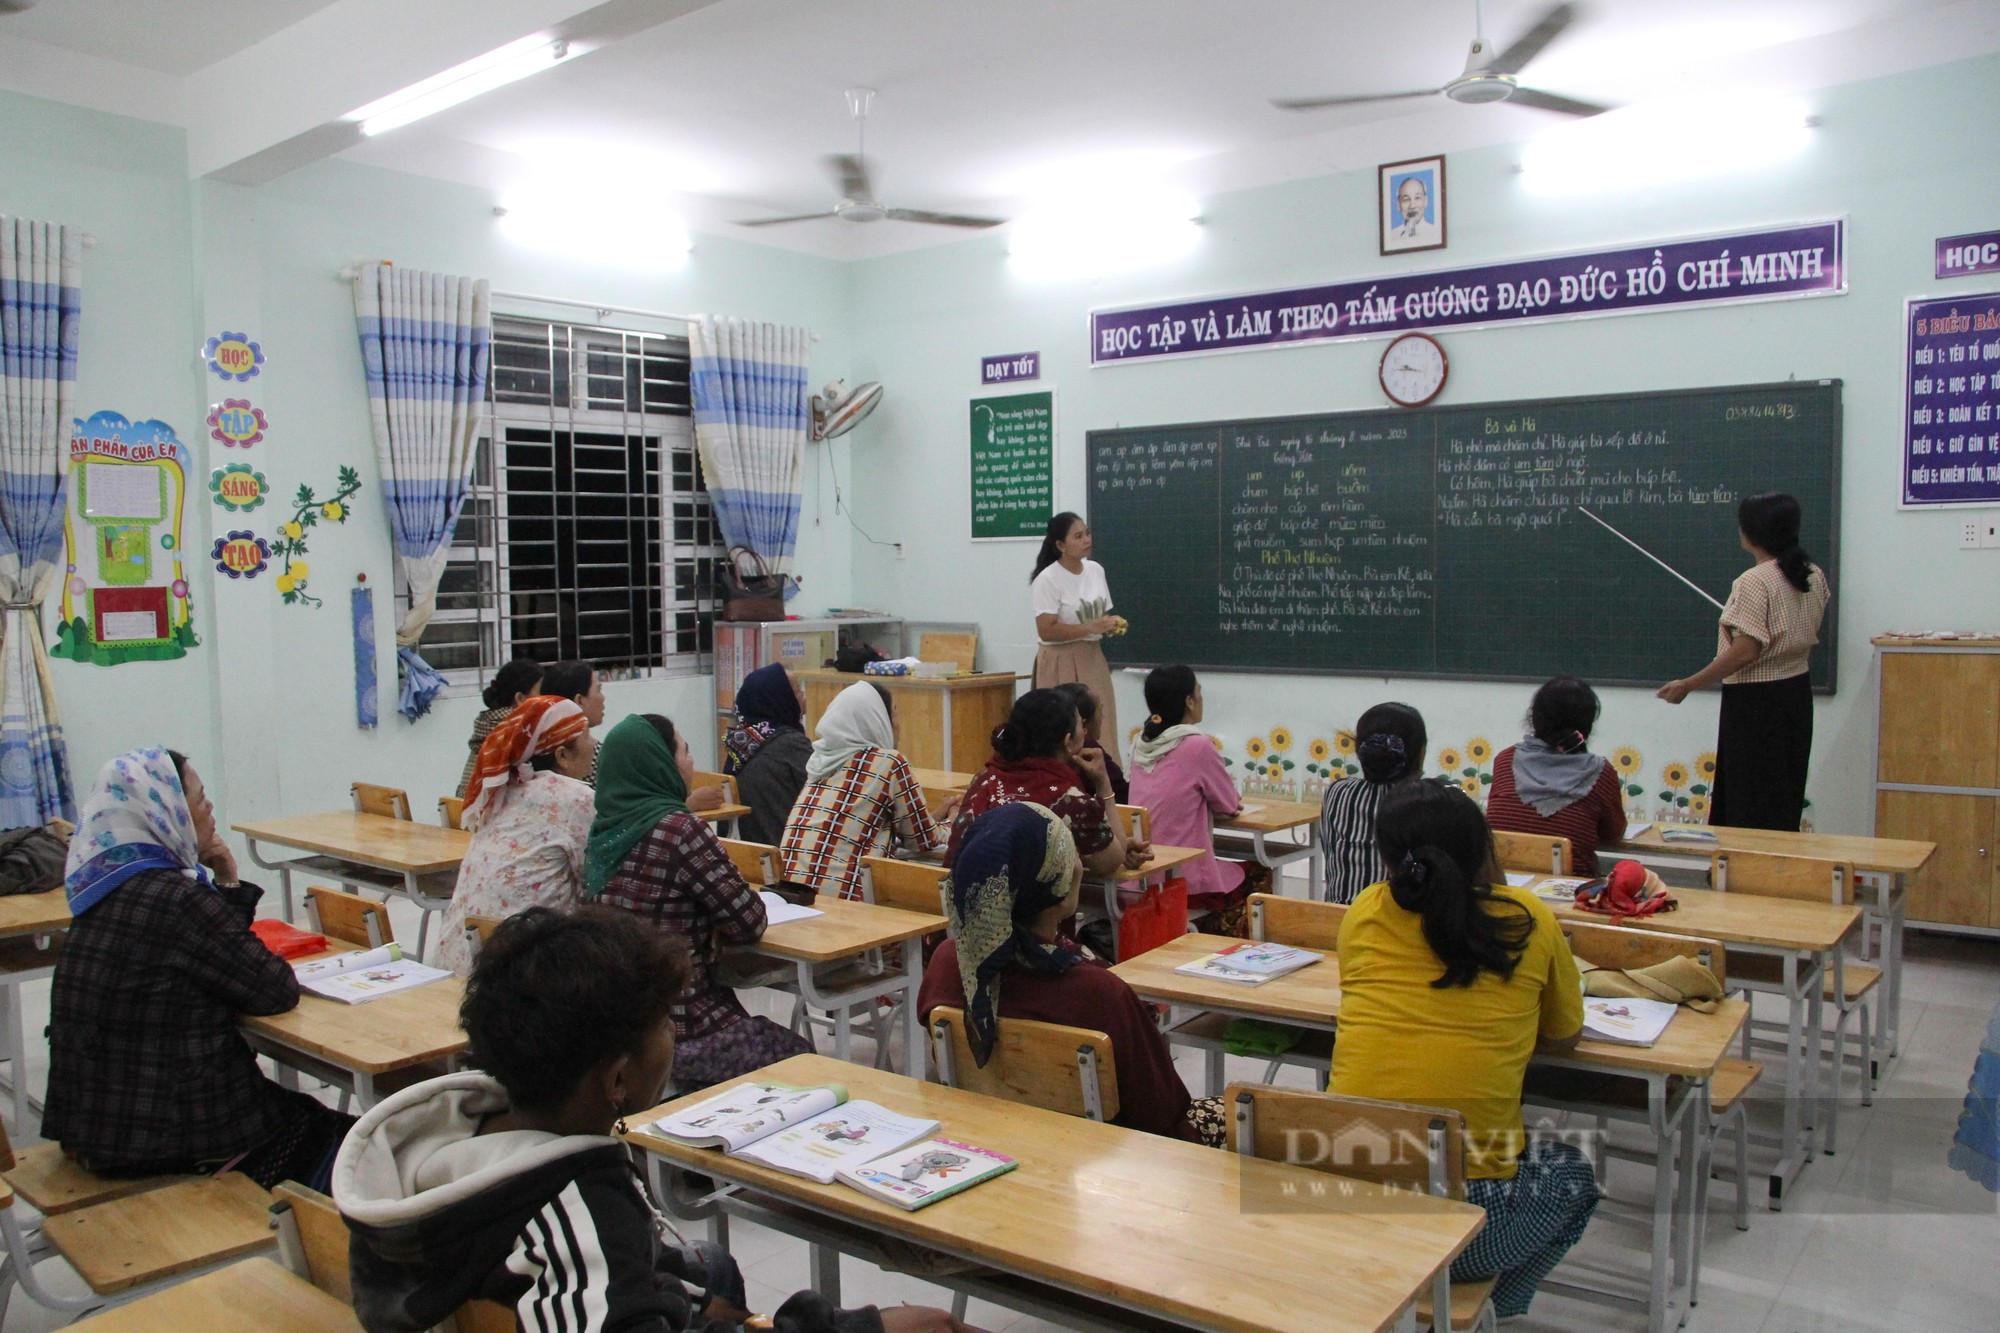 Những học sinh đặc biệt của lớp học xóa mù chữ ở làng Chăm Phước Nhơn ở Ninh Thuận - Ảnh 7.